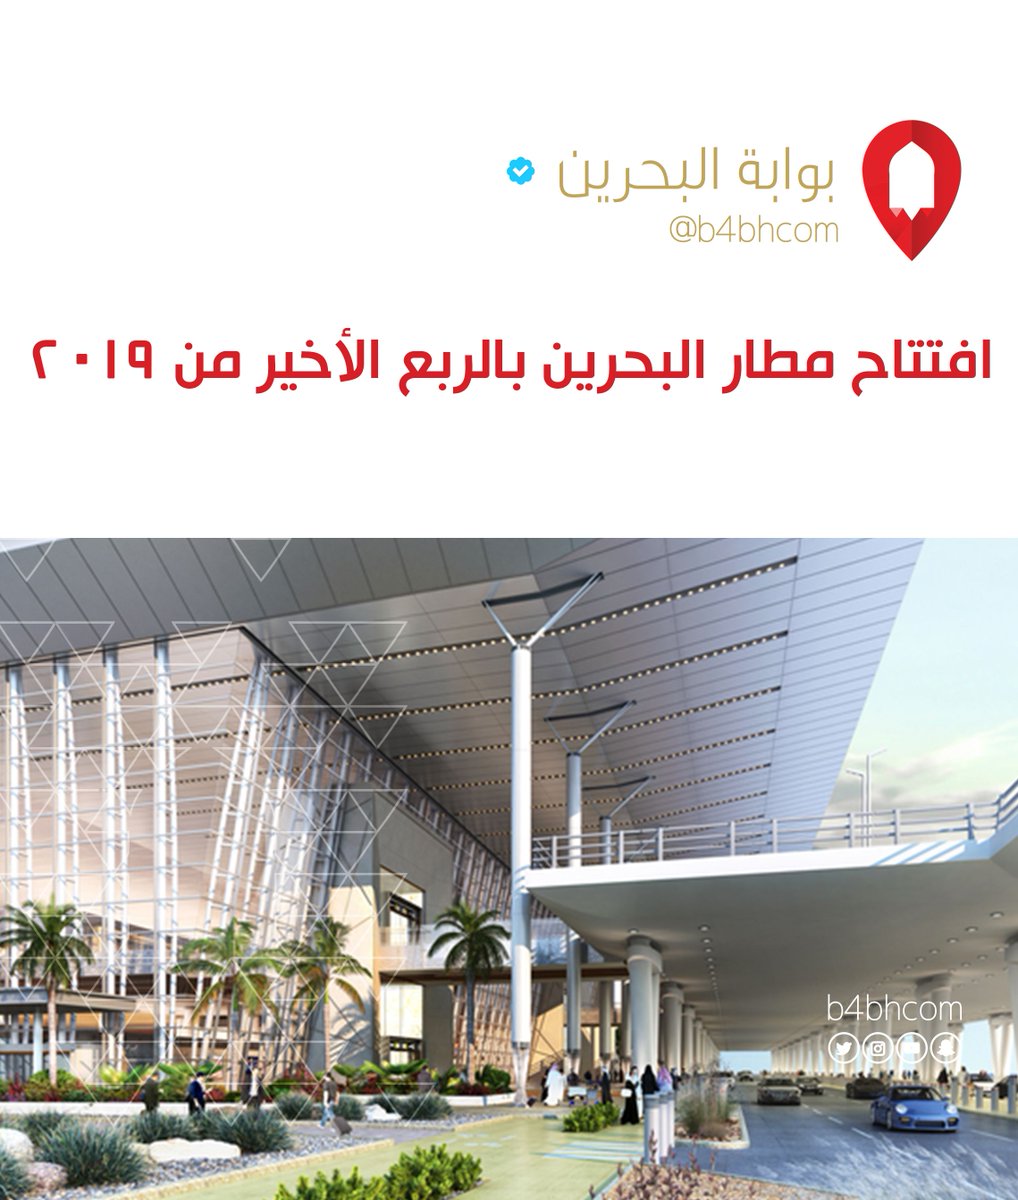 بوابة البحرين Twitter Da افتتاح مطار البحرين بالربع الأخير من ٢٠١٩